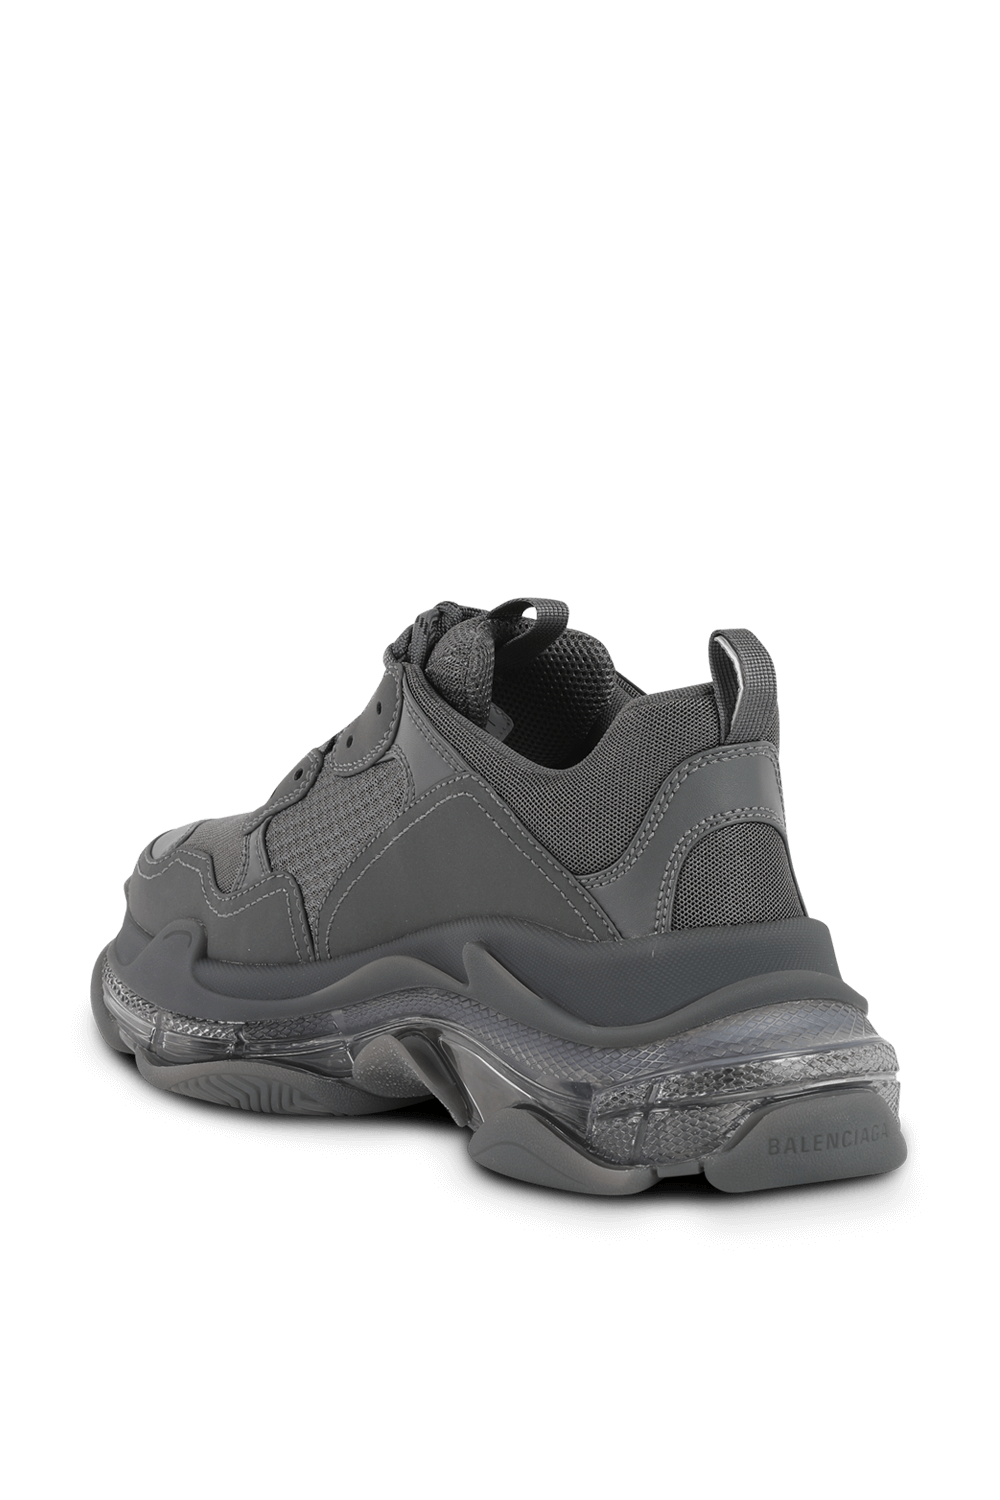 Triple S Clear Sole Sneaker in Grey BALENCIAGA